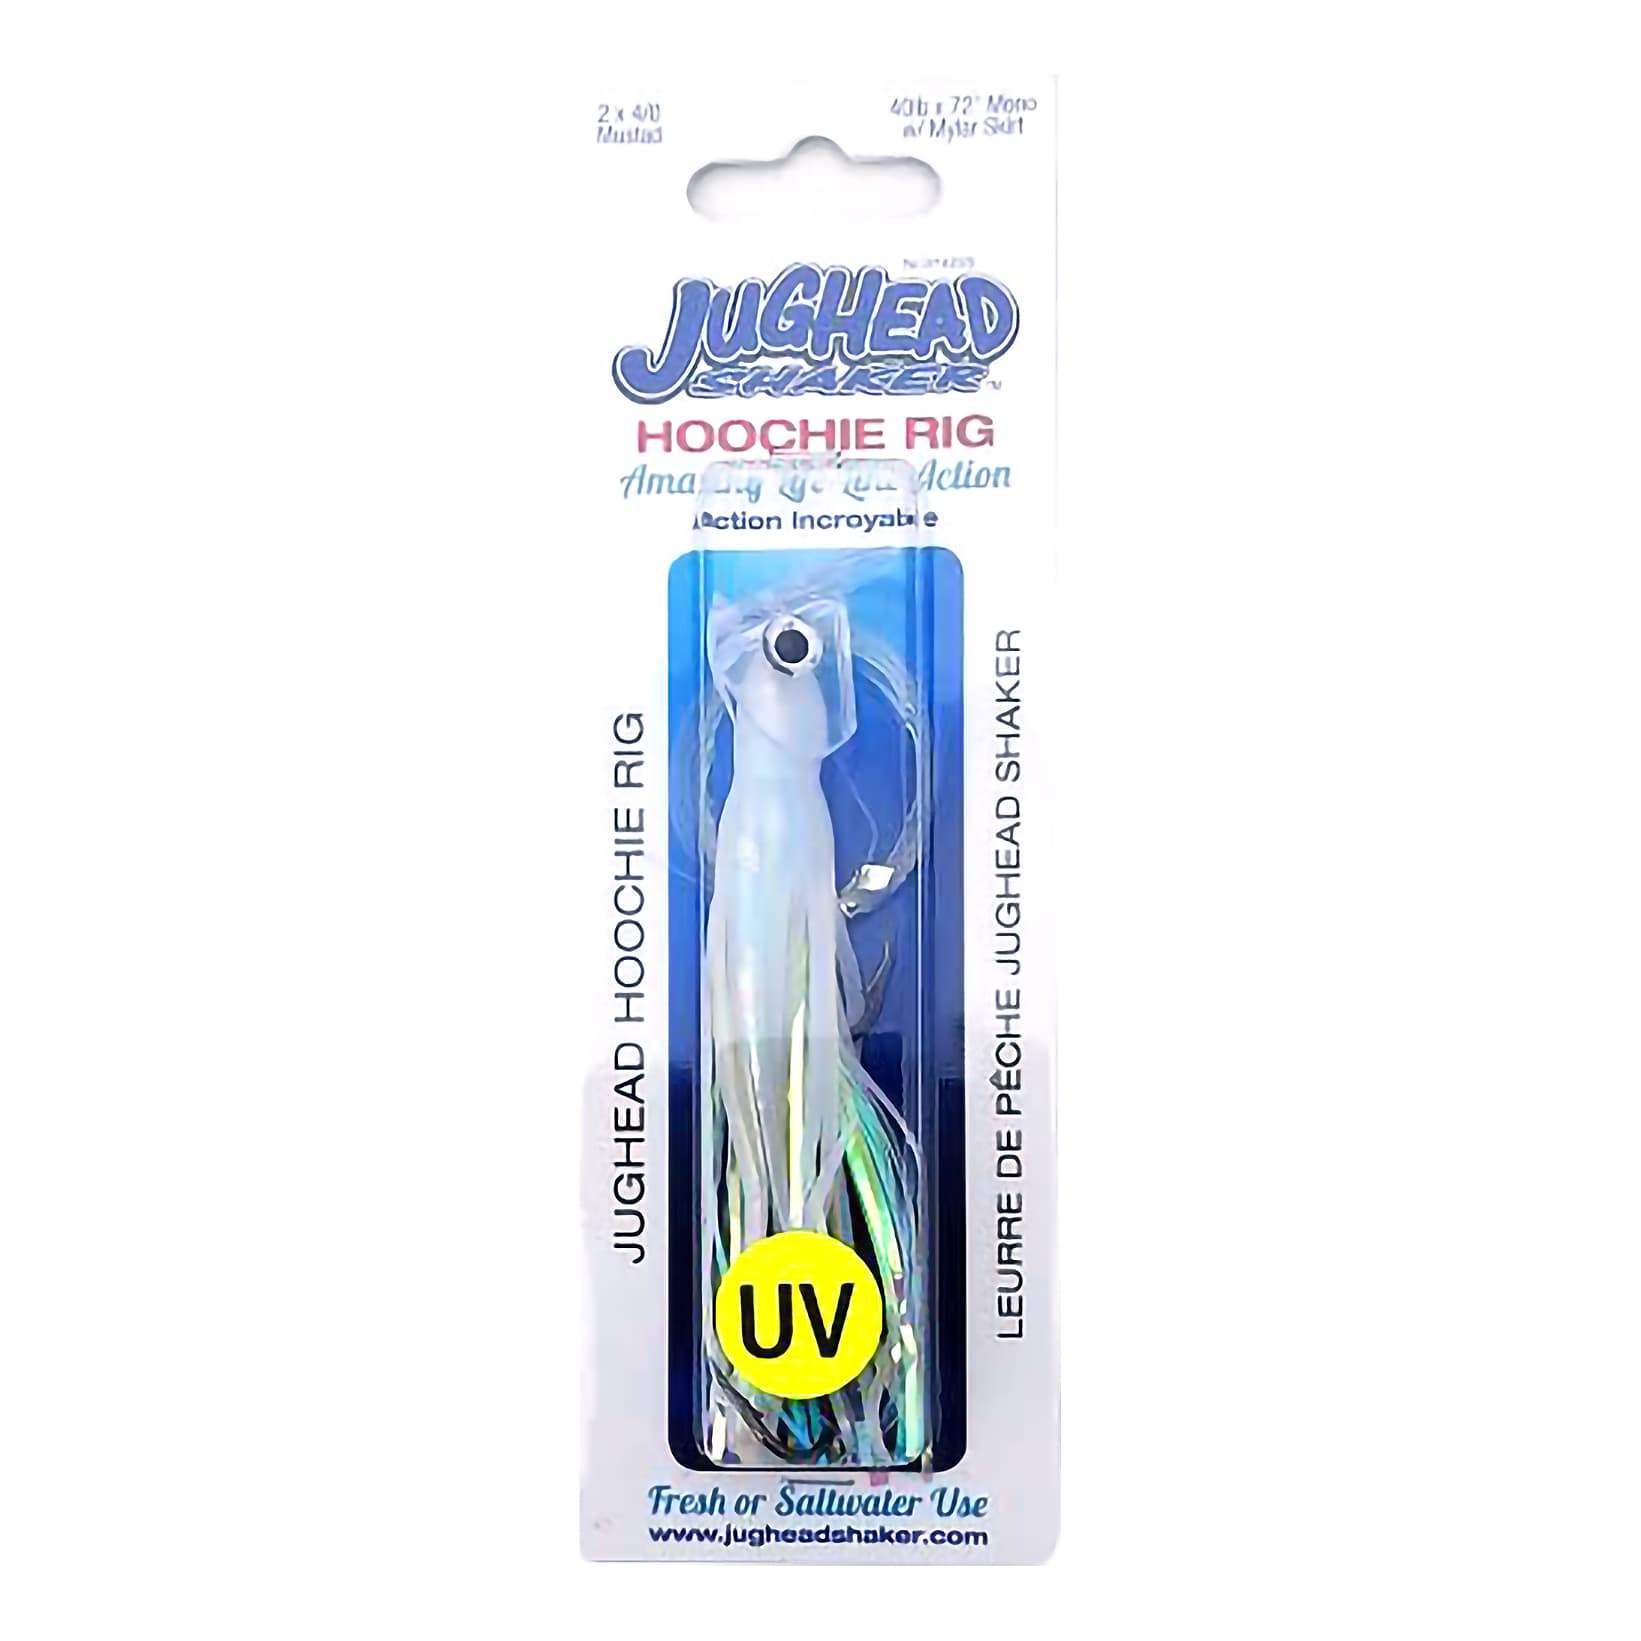 Jughead Shaker Hoochie Rig - UV White